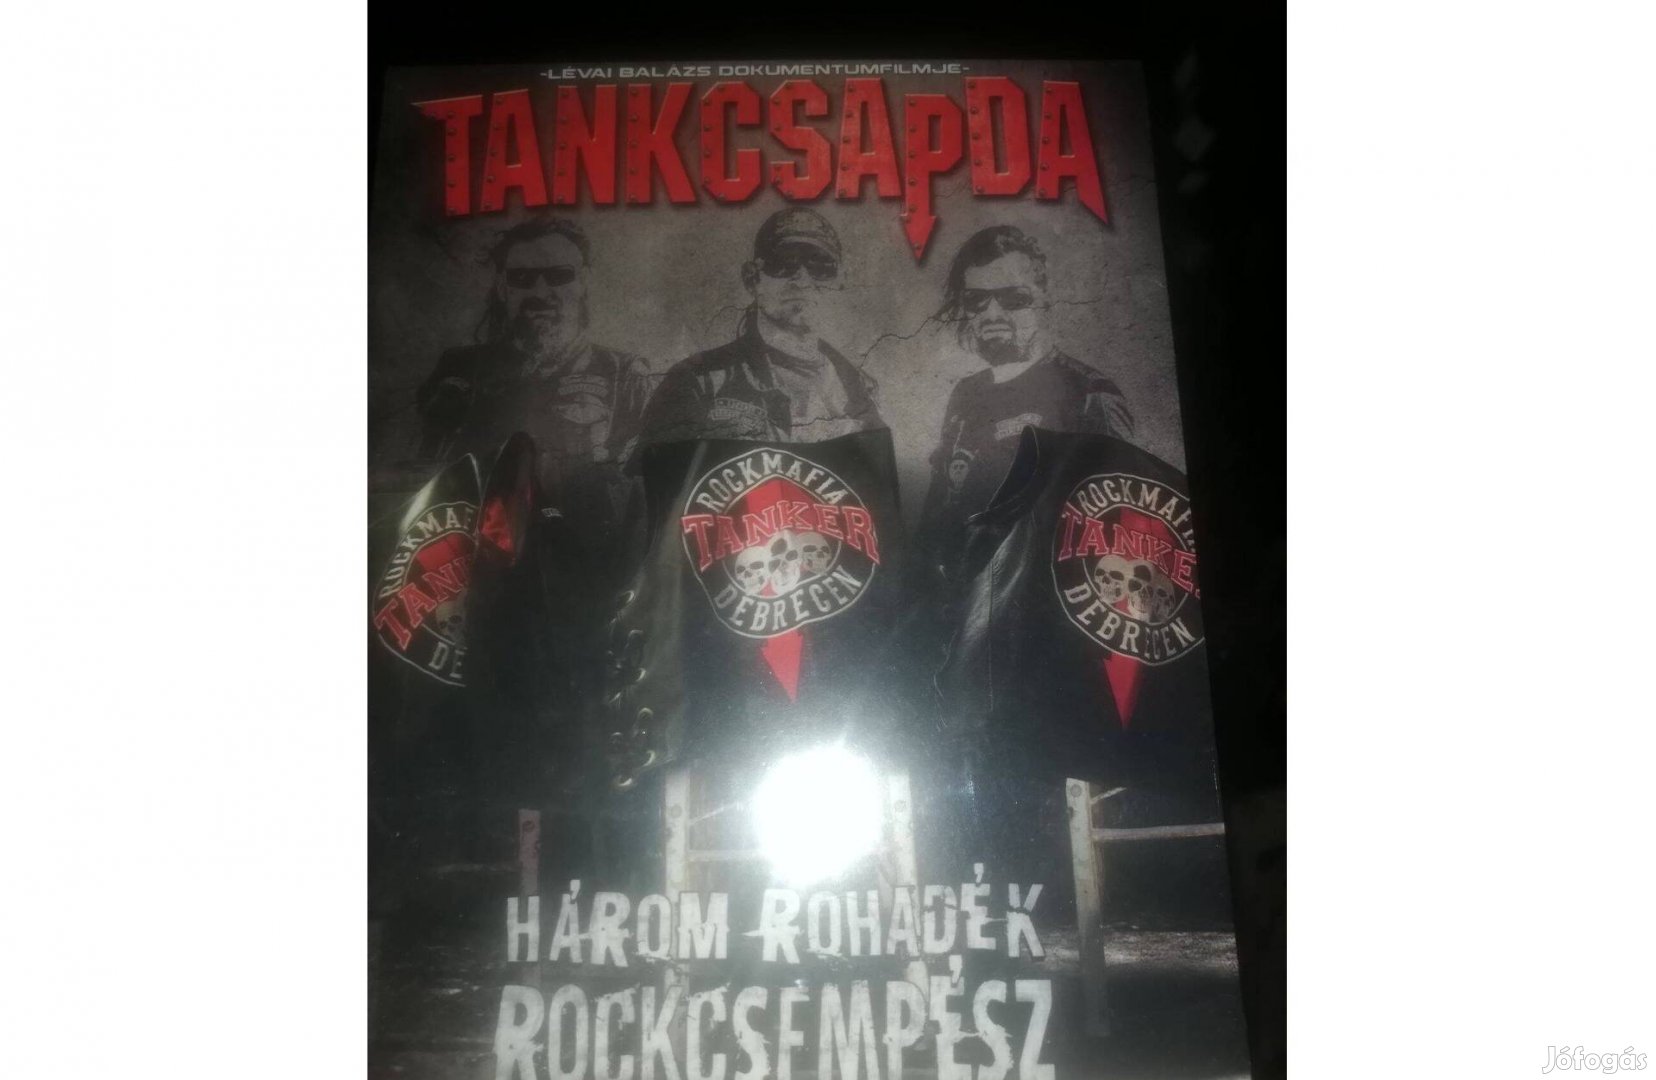 Tankcsapda dvd - három rohadék rockcsempész